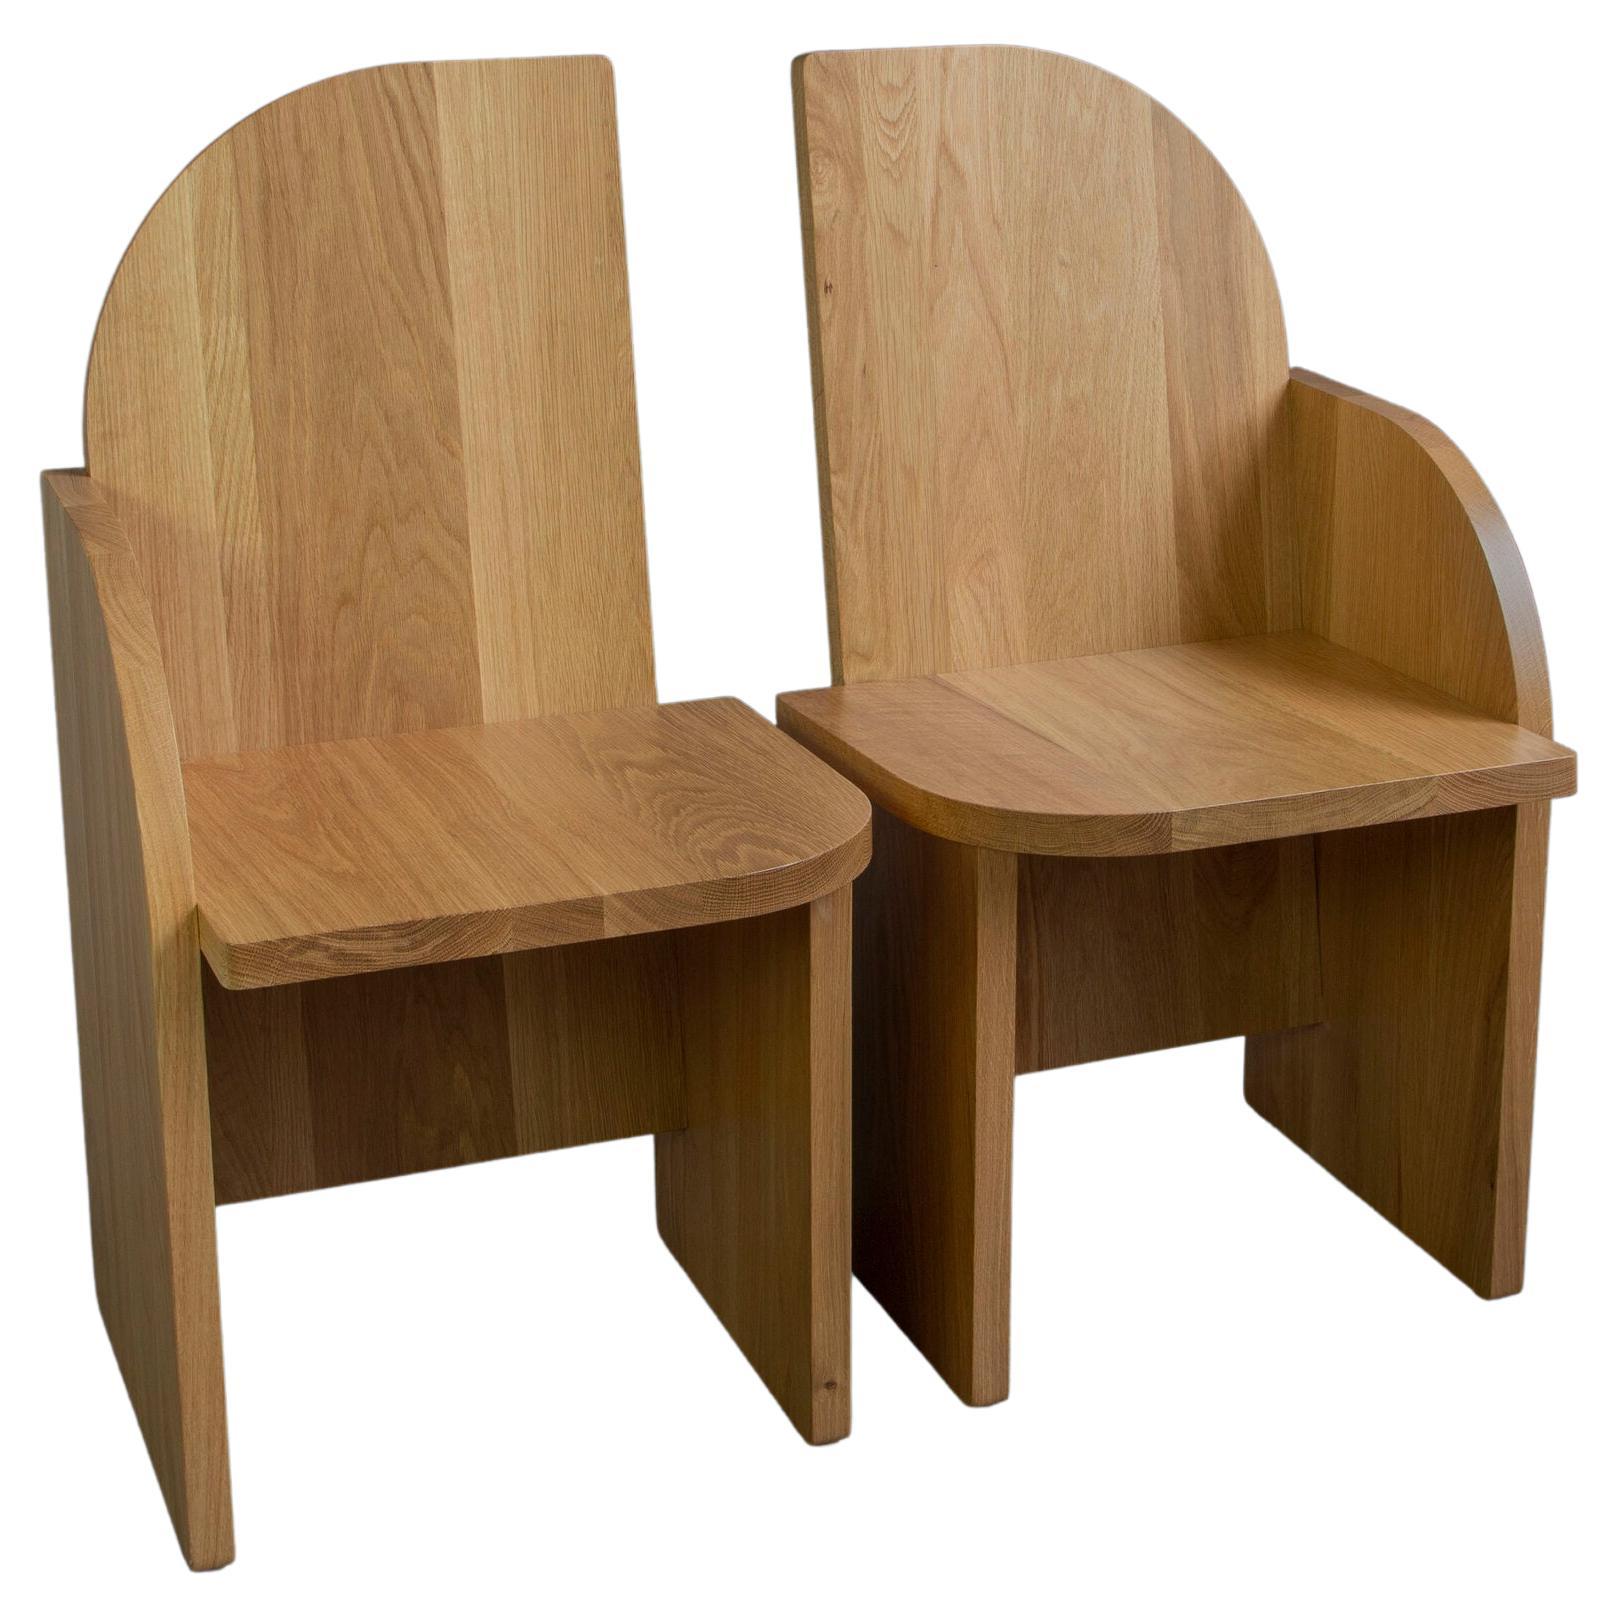 Paar Bluff-Beistellstühle aus Massivholz, weiße Eiche, skulpturaler Akzent, Sitzmöbel